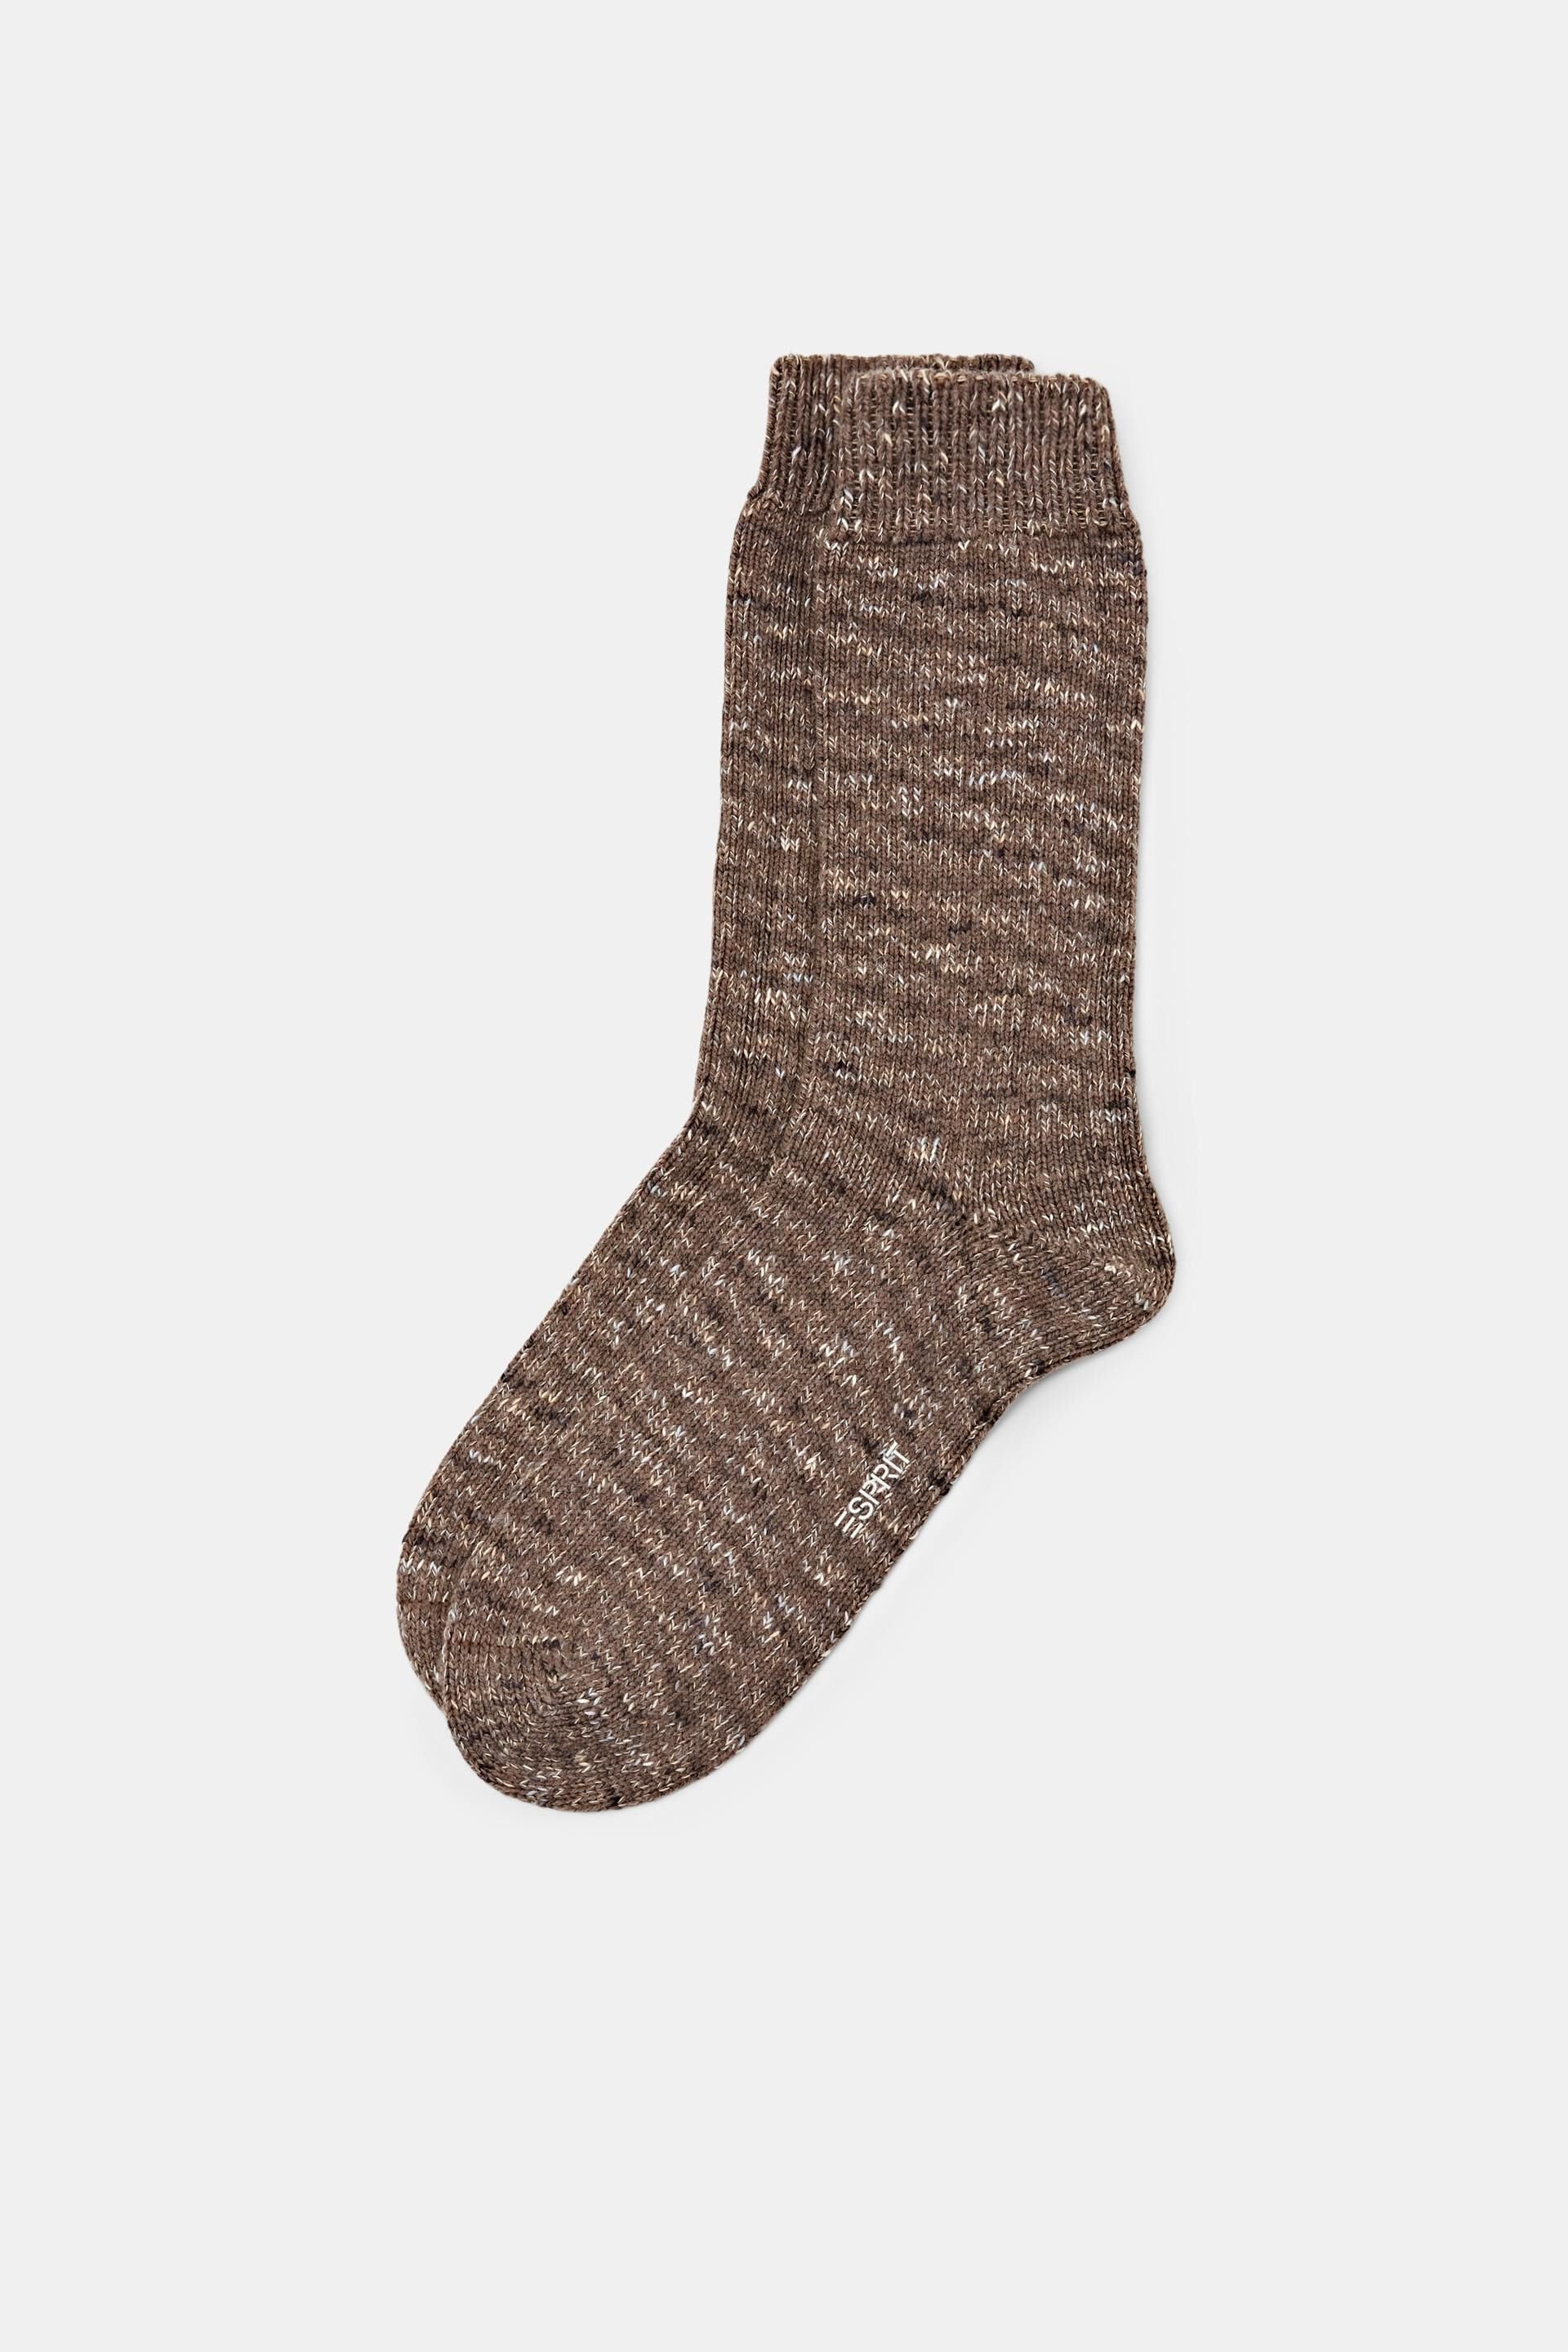 Esprit socks boot knit Chunky